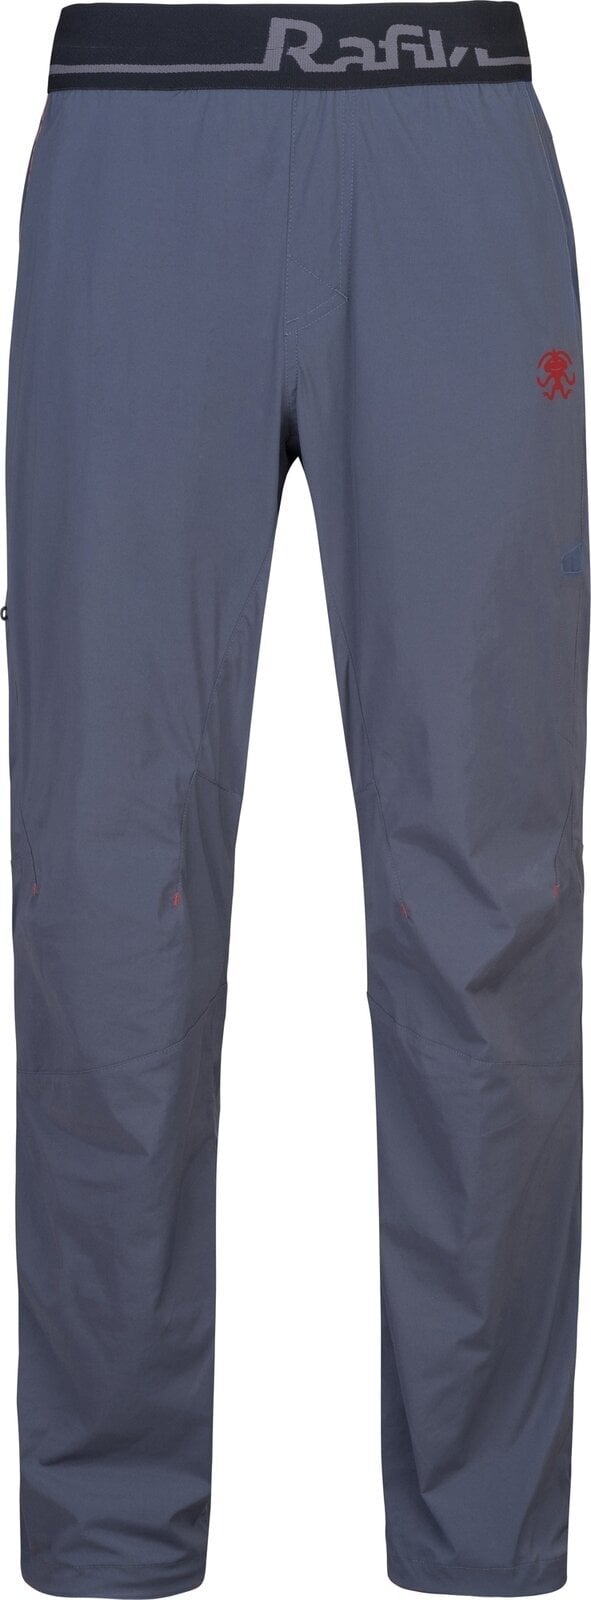 Outdoorové kalhoty Rafiki Drive Man Pants India Ink M Outdoorové kalhoty